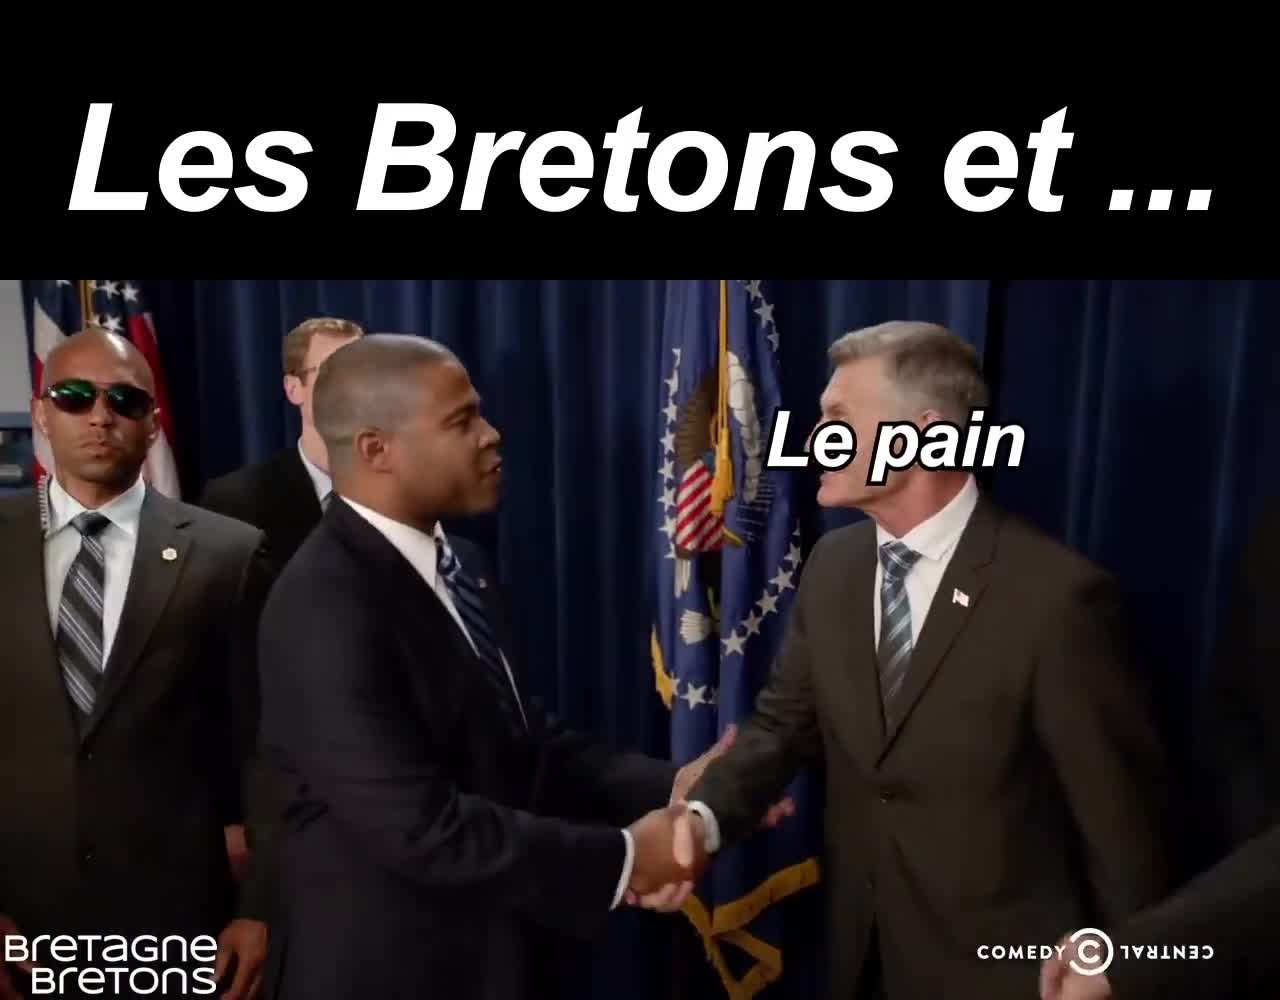 Les Bretons et ... (Bretagne Bretons)